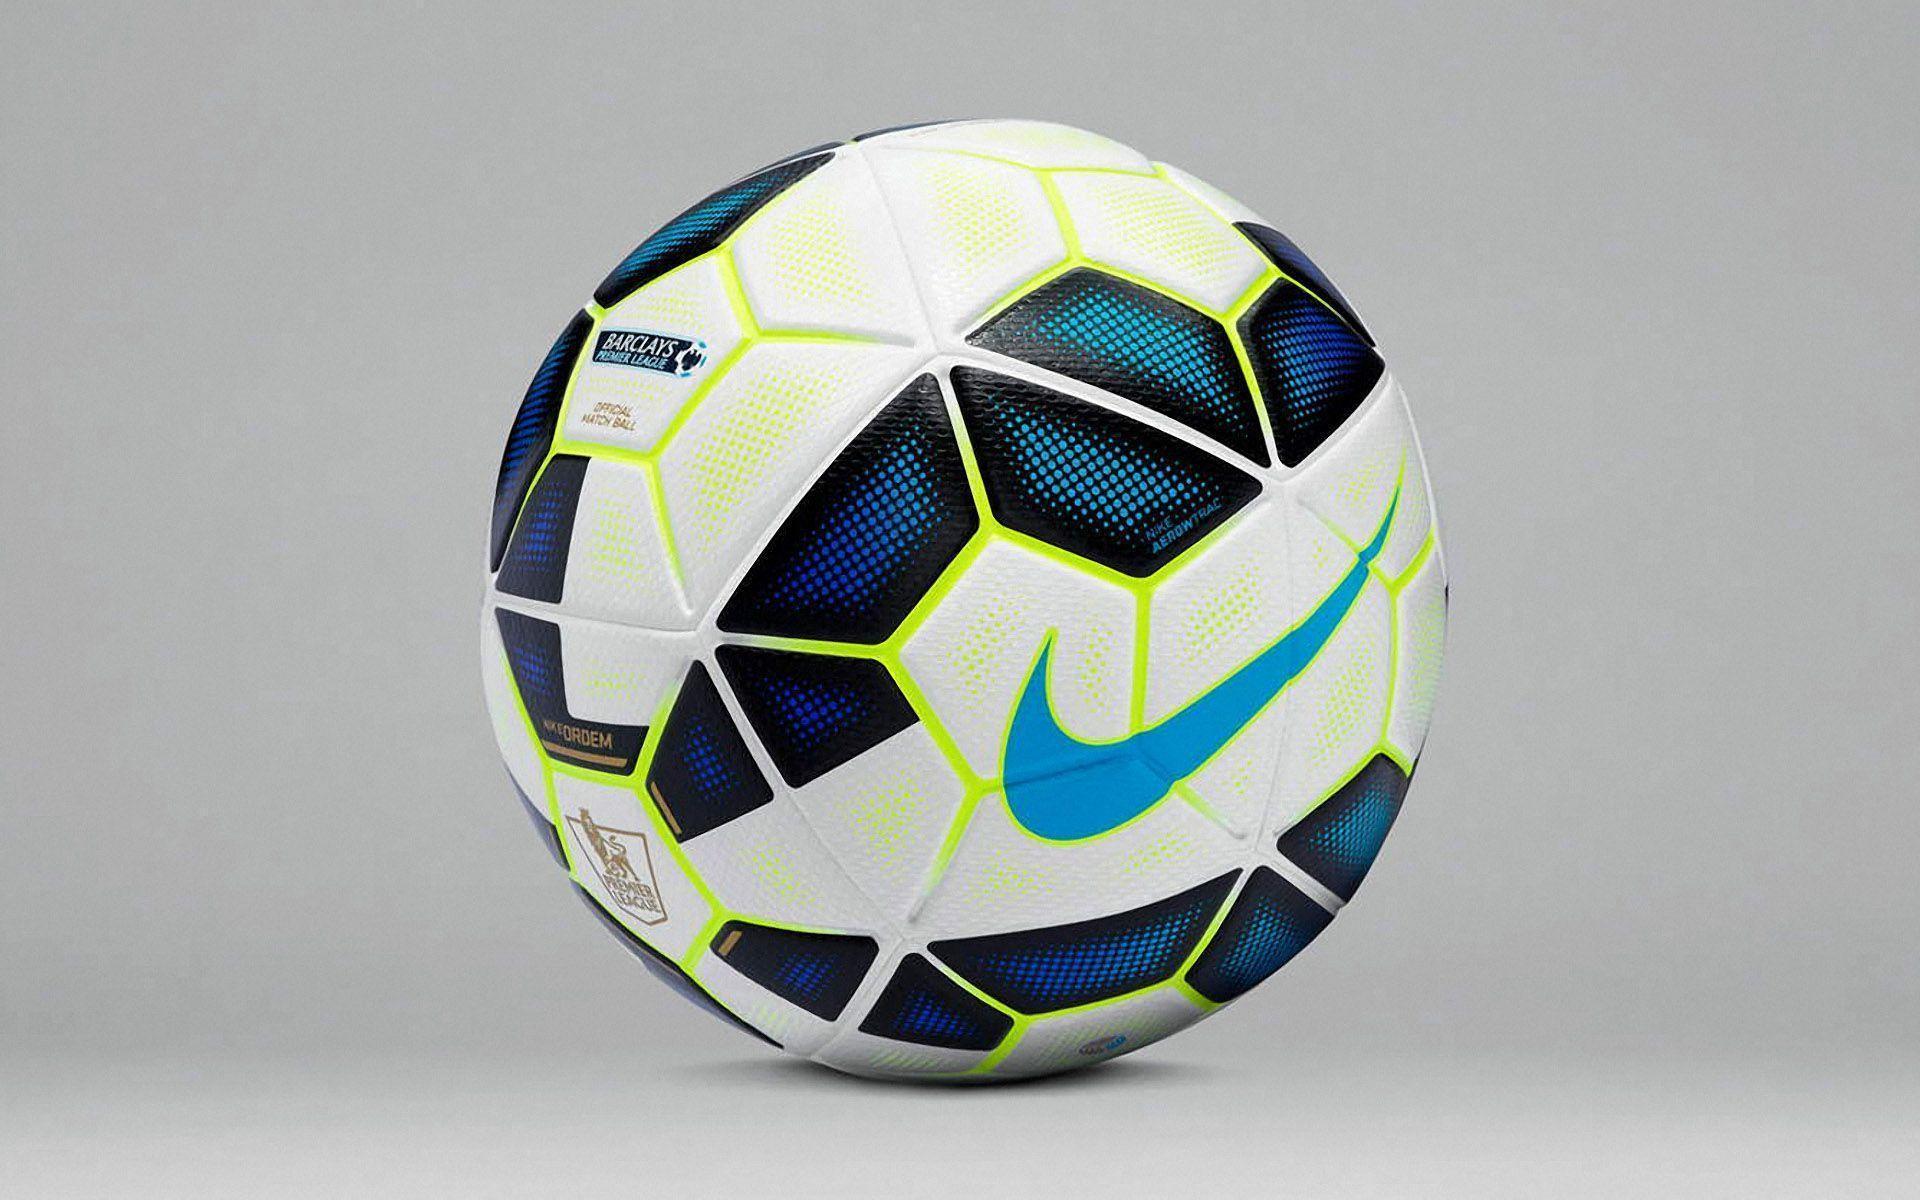 Nike Ordem 2014 2015 Premier League Ball Wallpaper Wide Or HD